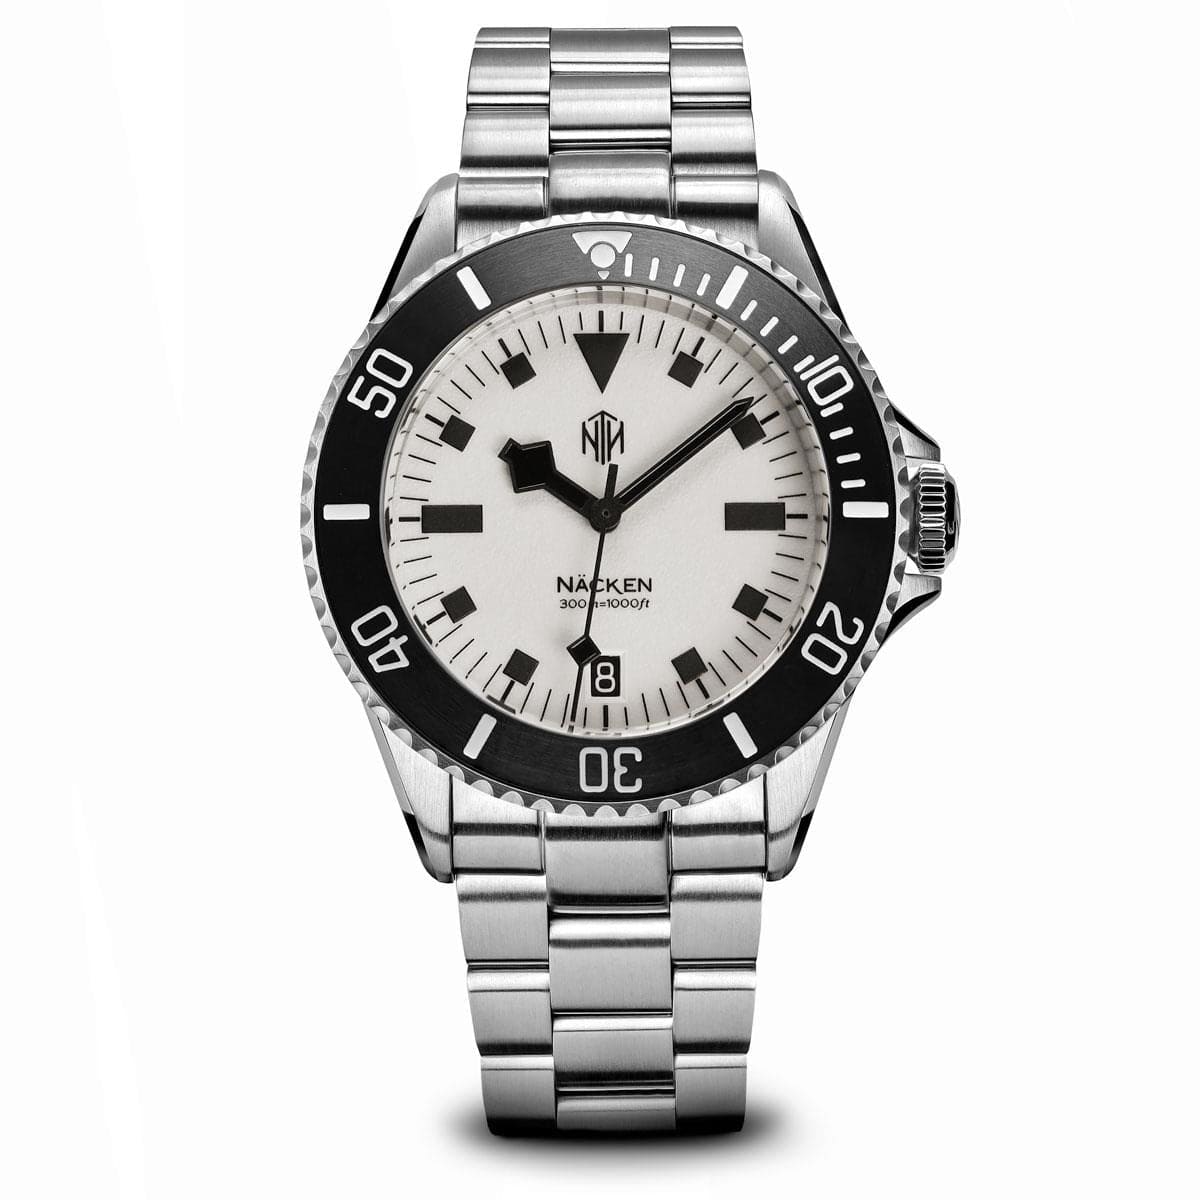 NTH Näcken Dive Watch - Vintage White